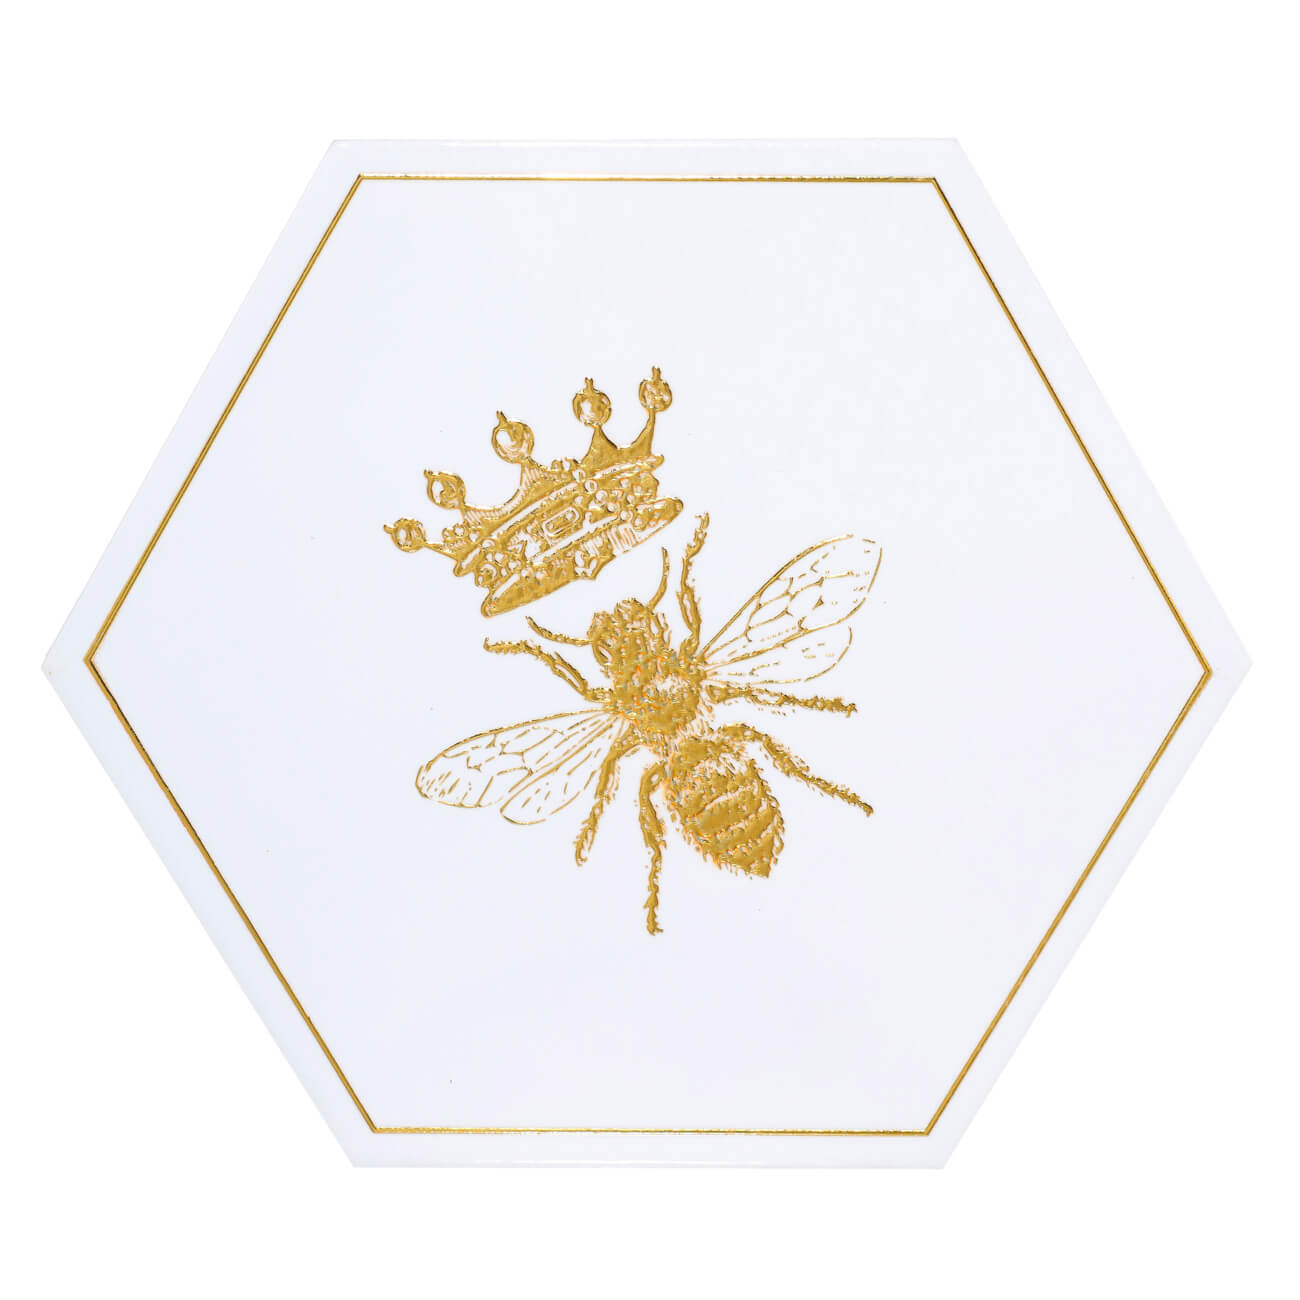 Подставка под горячее, 20 см, керамика/пробка, шестиугольная, белая, Королевская пчела, Honey изображение № 1